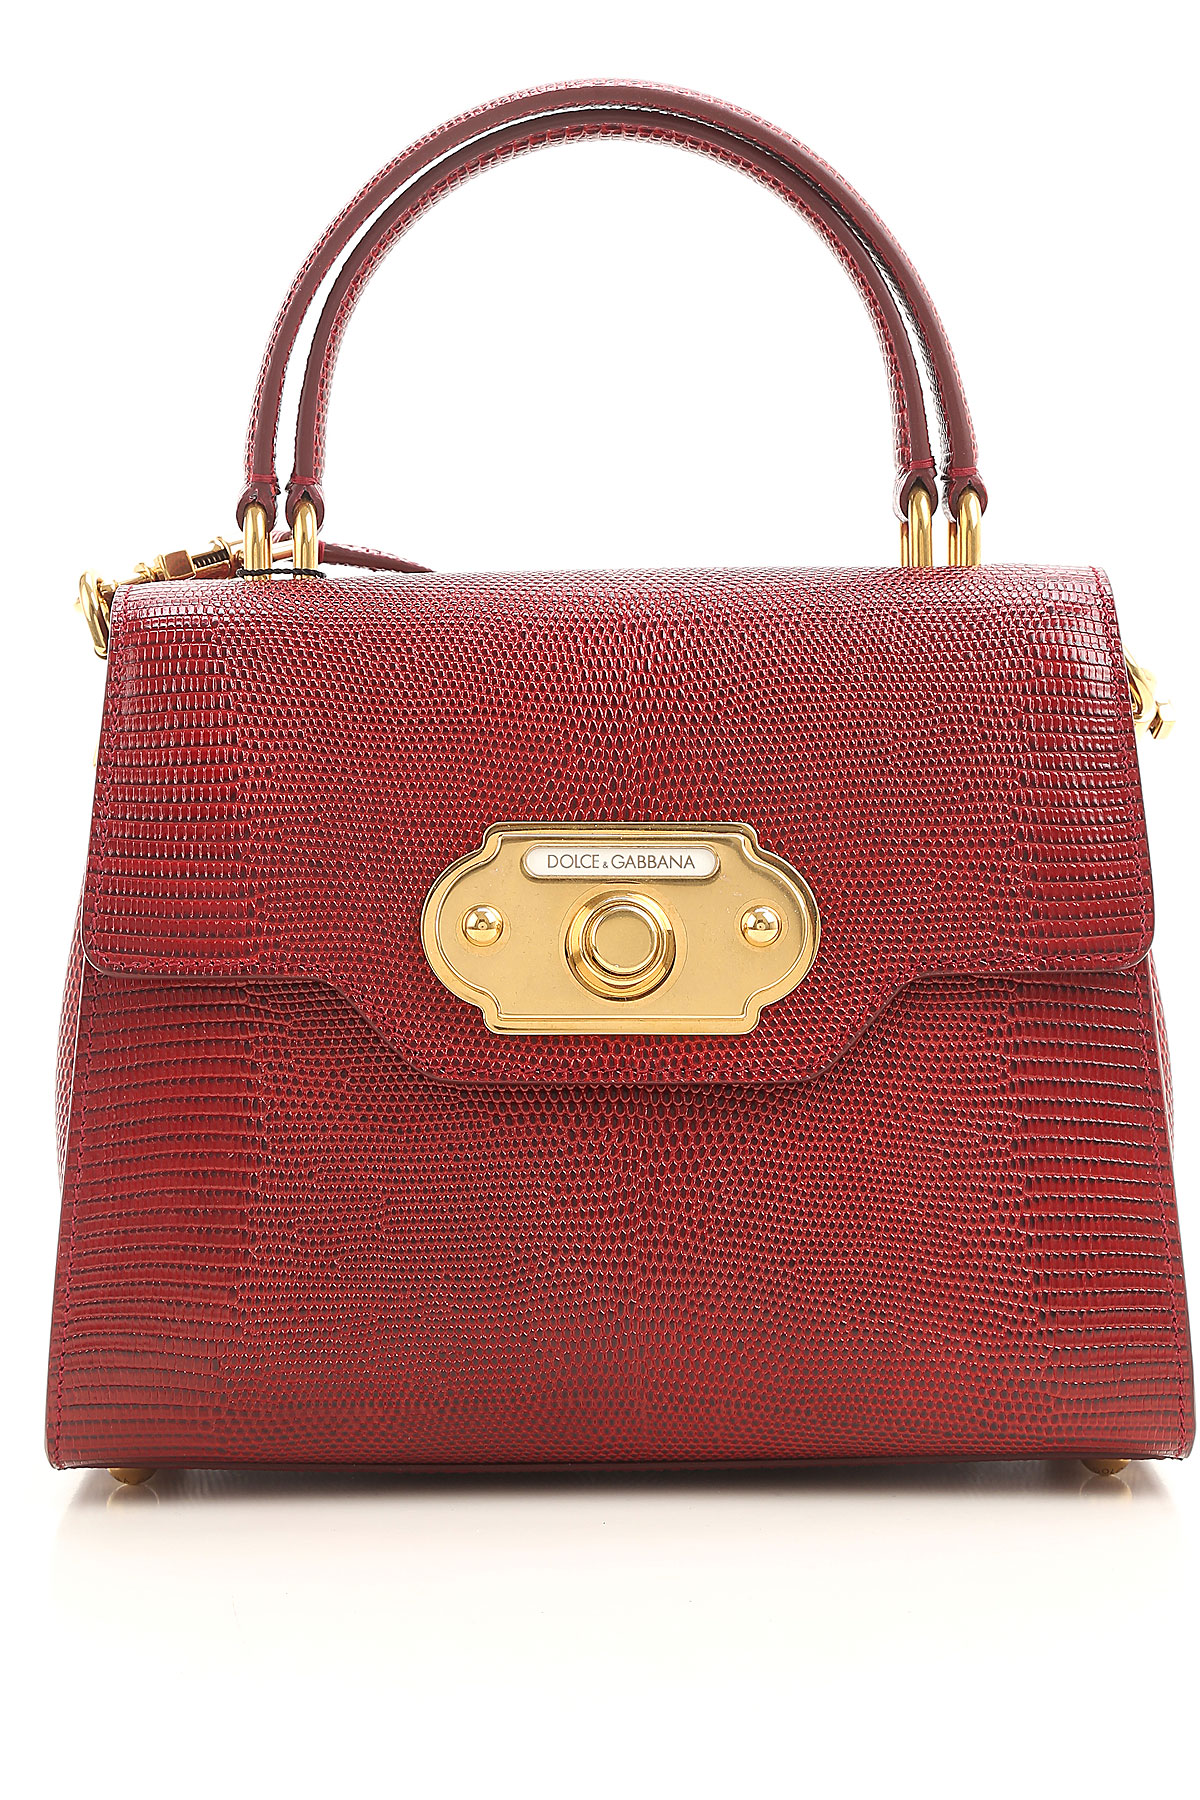 Handbags Dolce & Gabbana, Style code: bb6374-ai760-87515